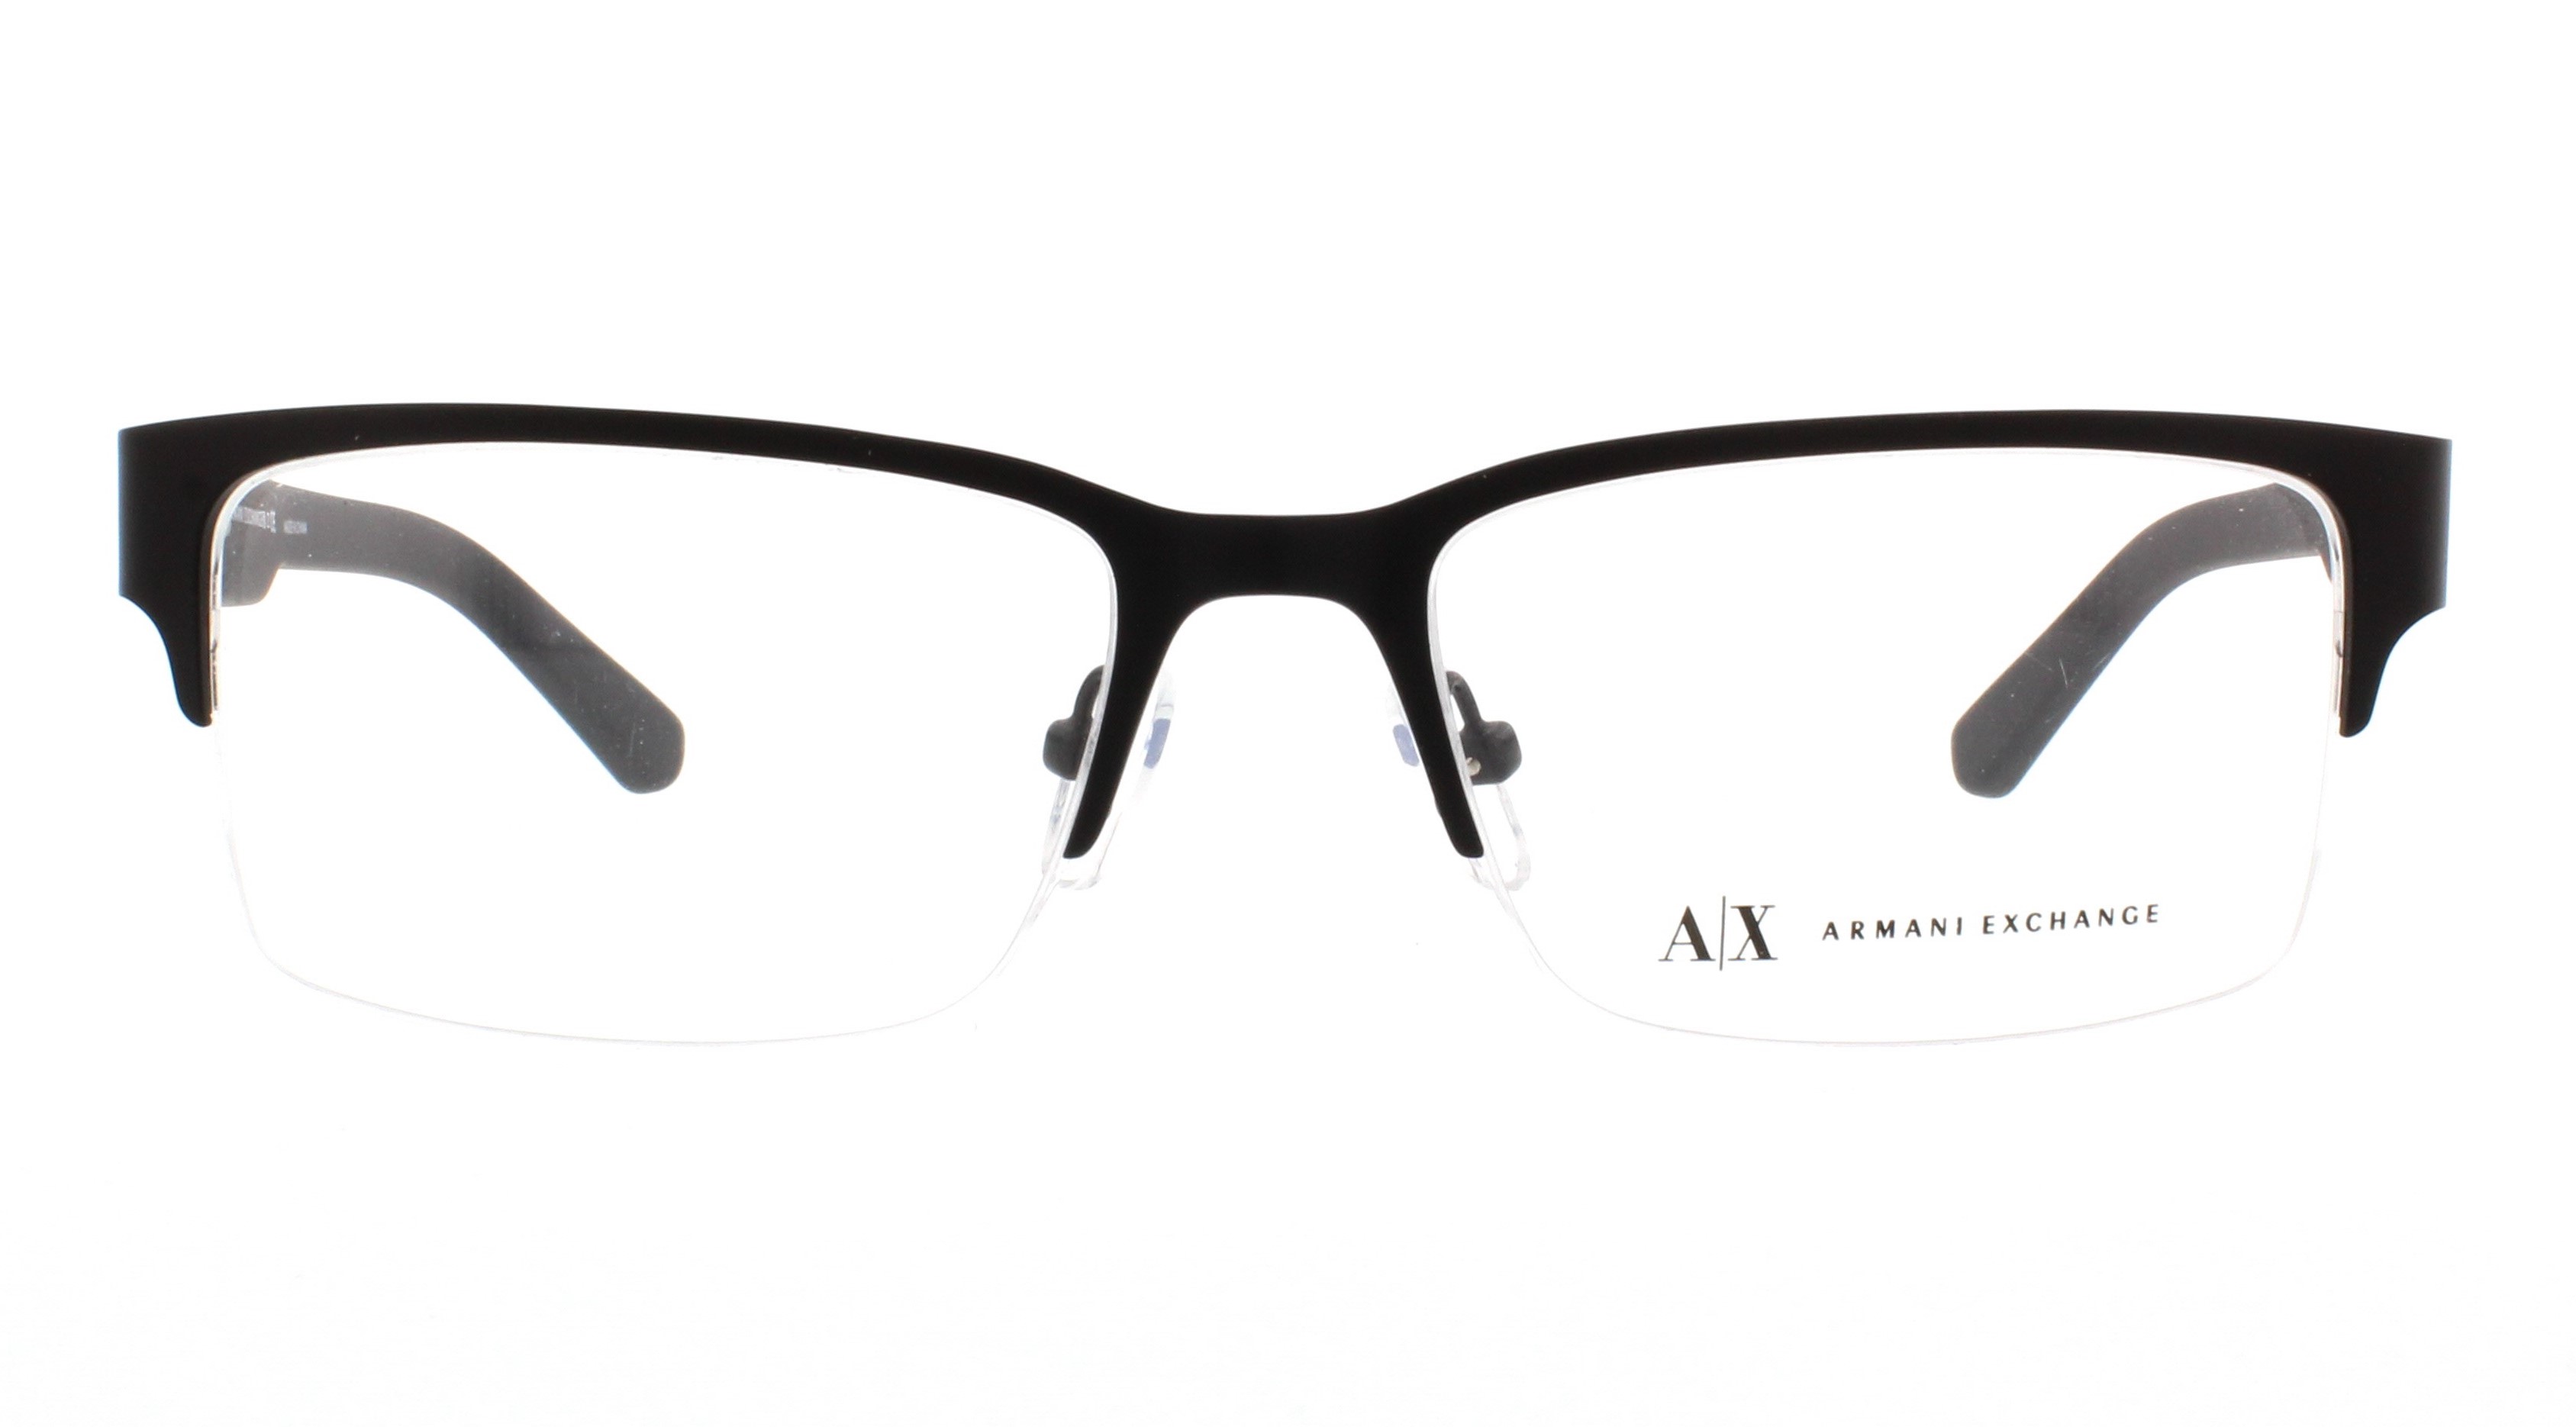 Designer Frames Outlet. Armani Eyeglasses Exchange AX1014